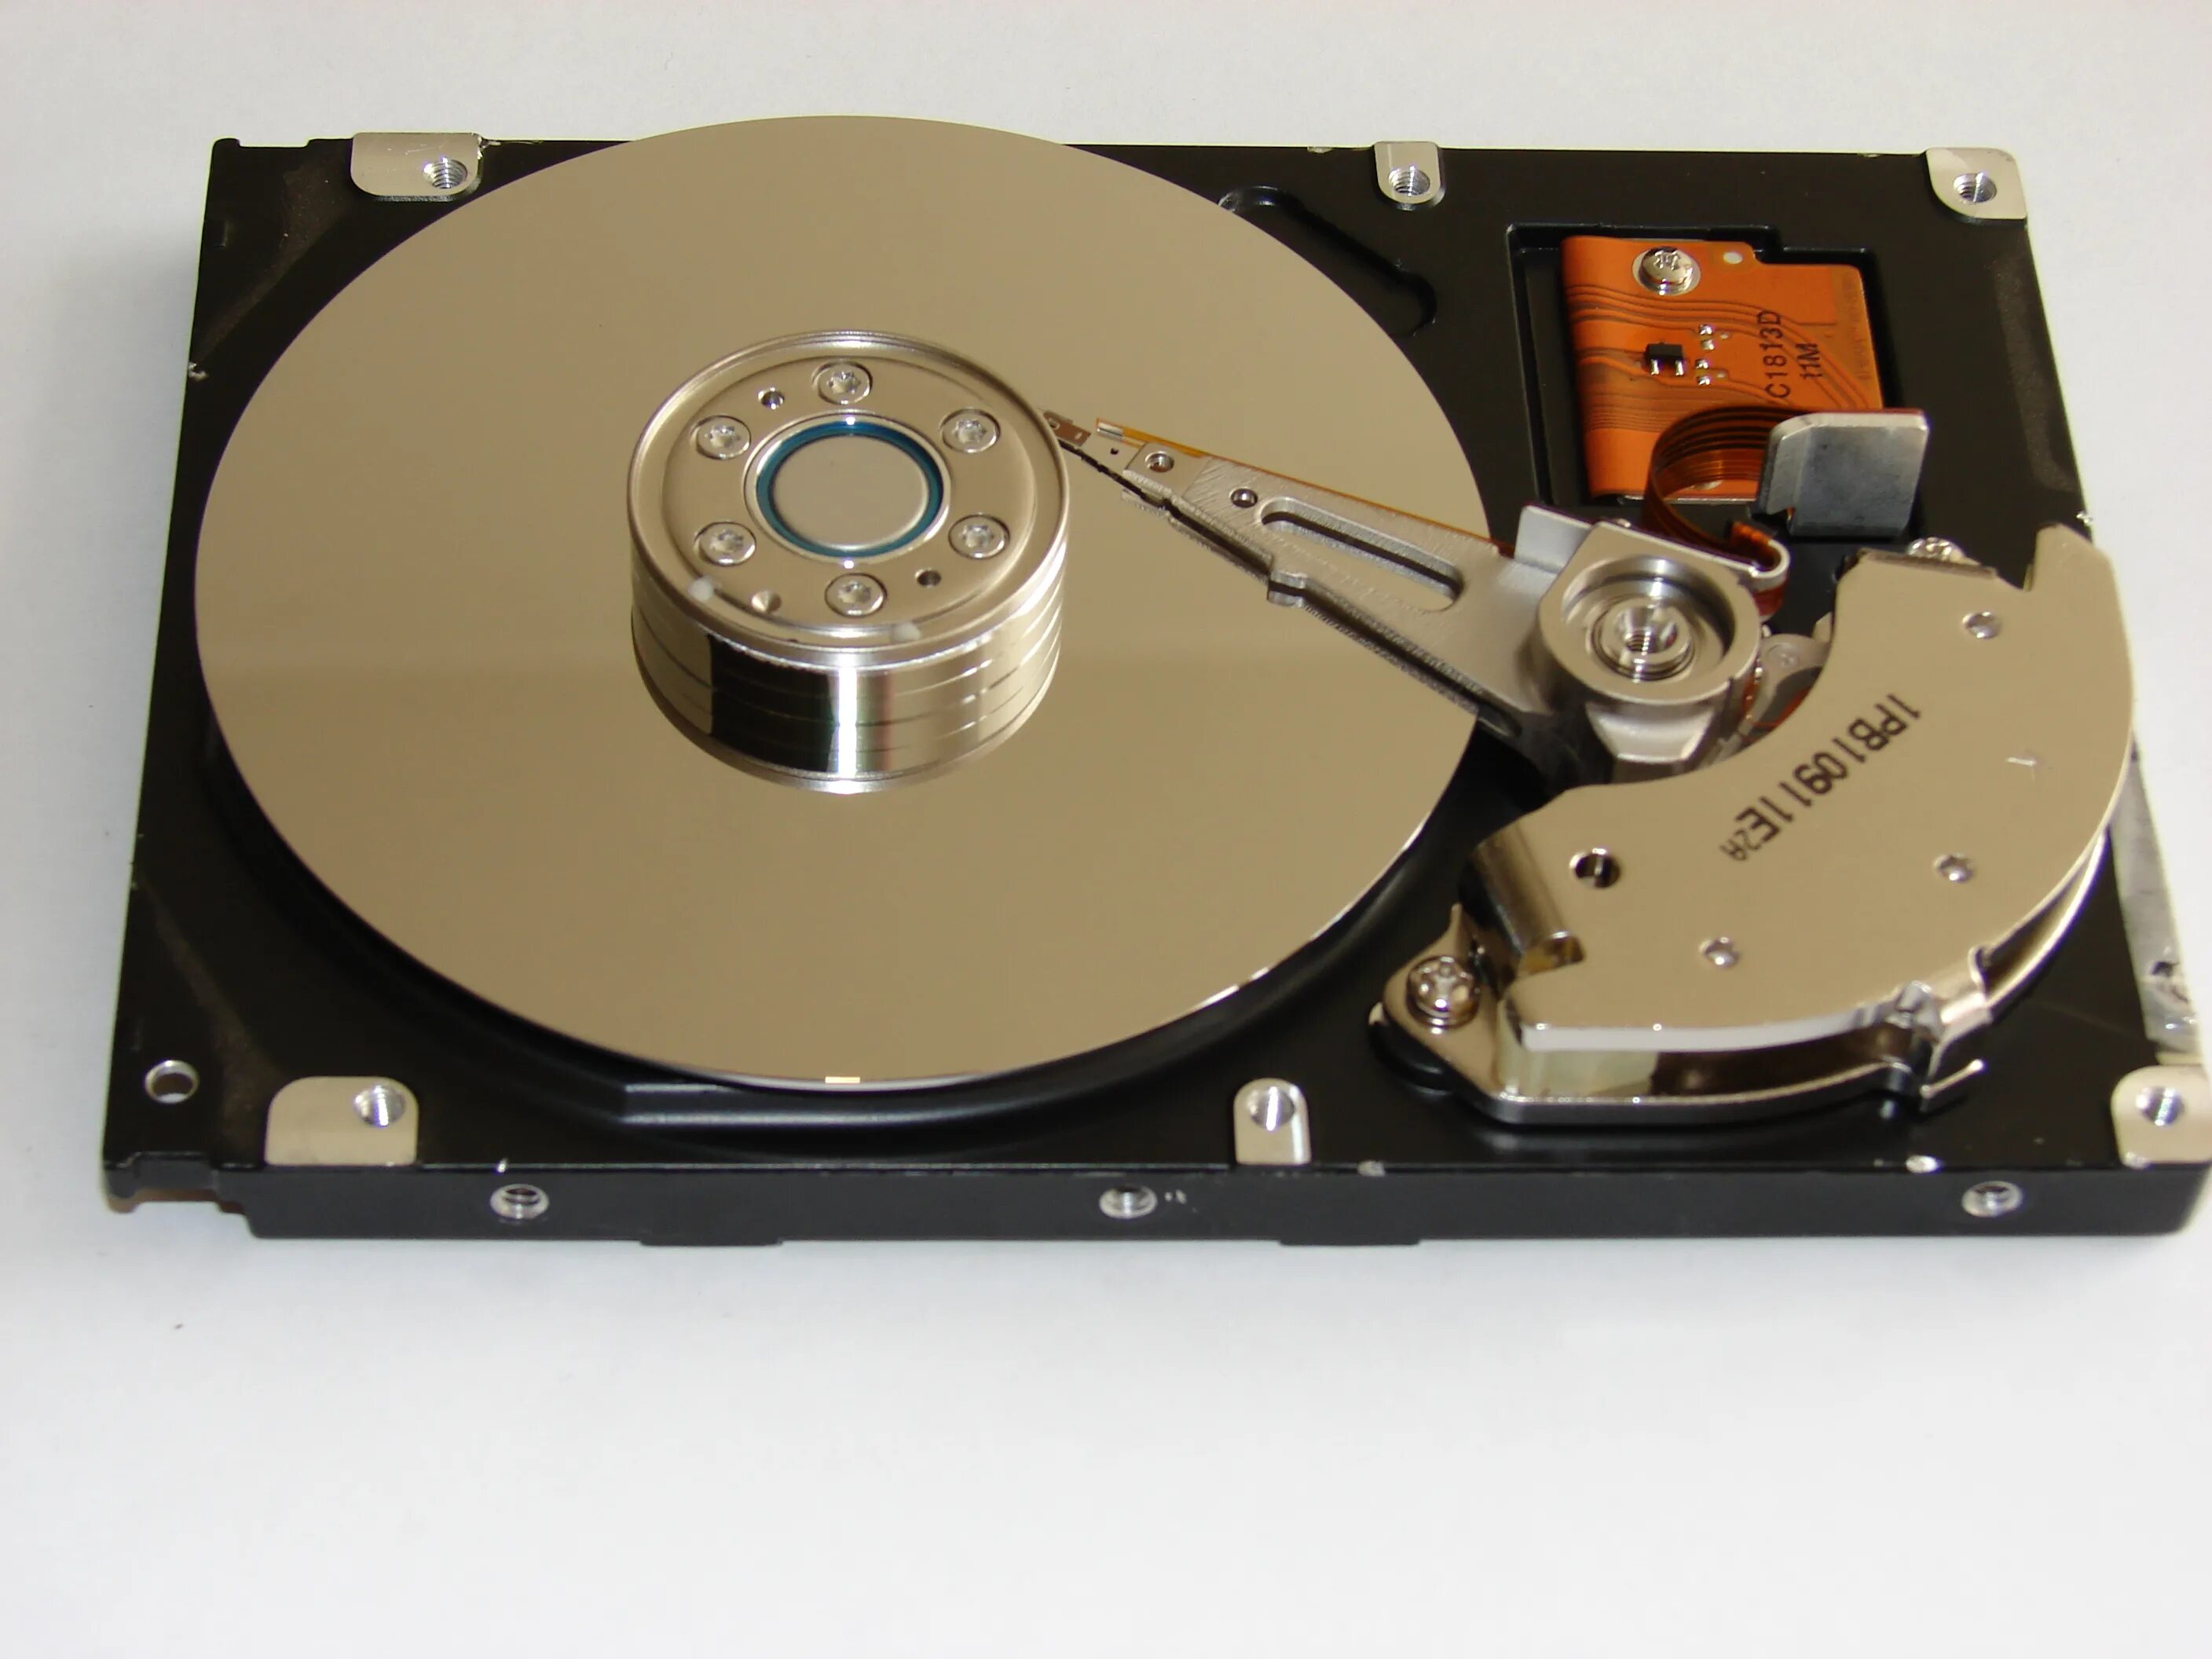 Жесткий магнитный диск Винчестер. Жесткие диски – HDD (hard Disk Drive). Жесткий магнитный диск (НЖМД). Жёстких магнитных дисках, или Винчестер. Хорошие жесткие диски для пк